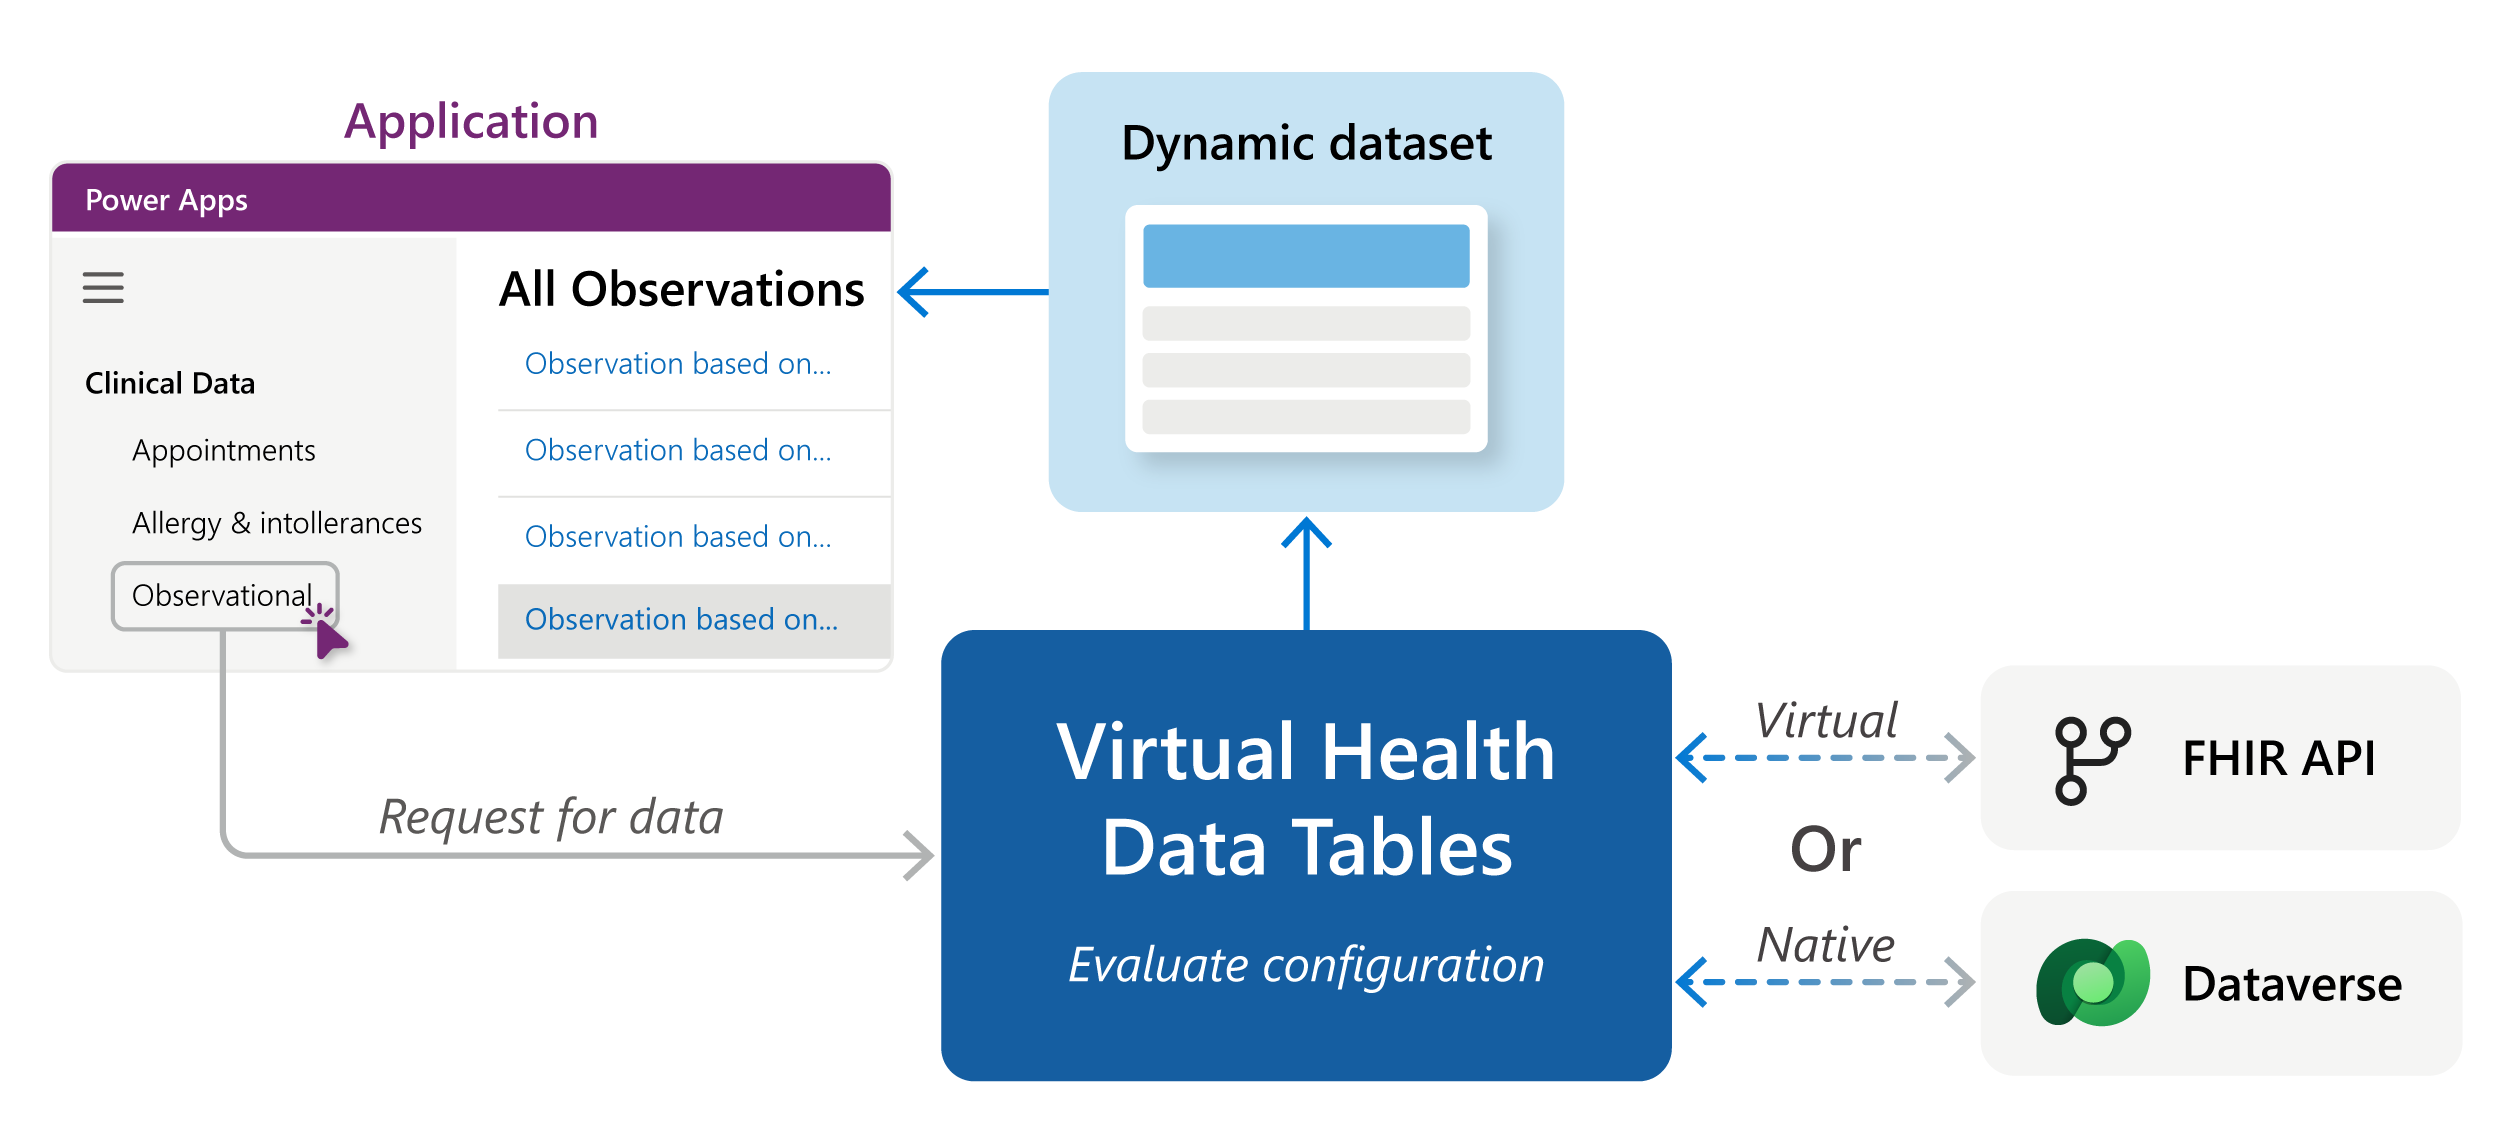 Diagramma che mostra il flusso delle tabelle di dati sulla salute virtuali.